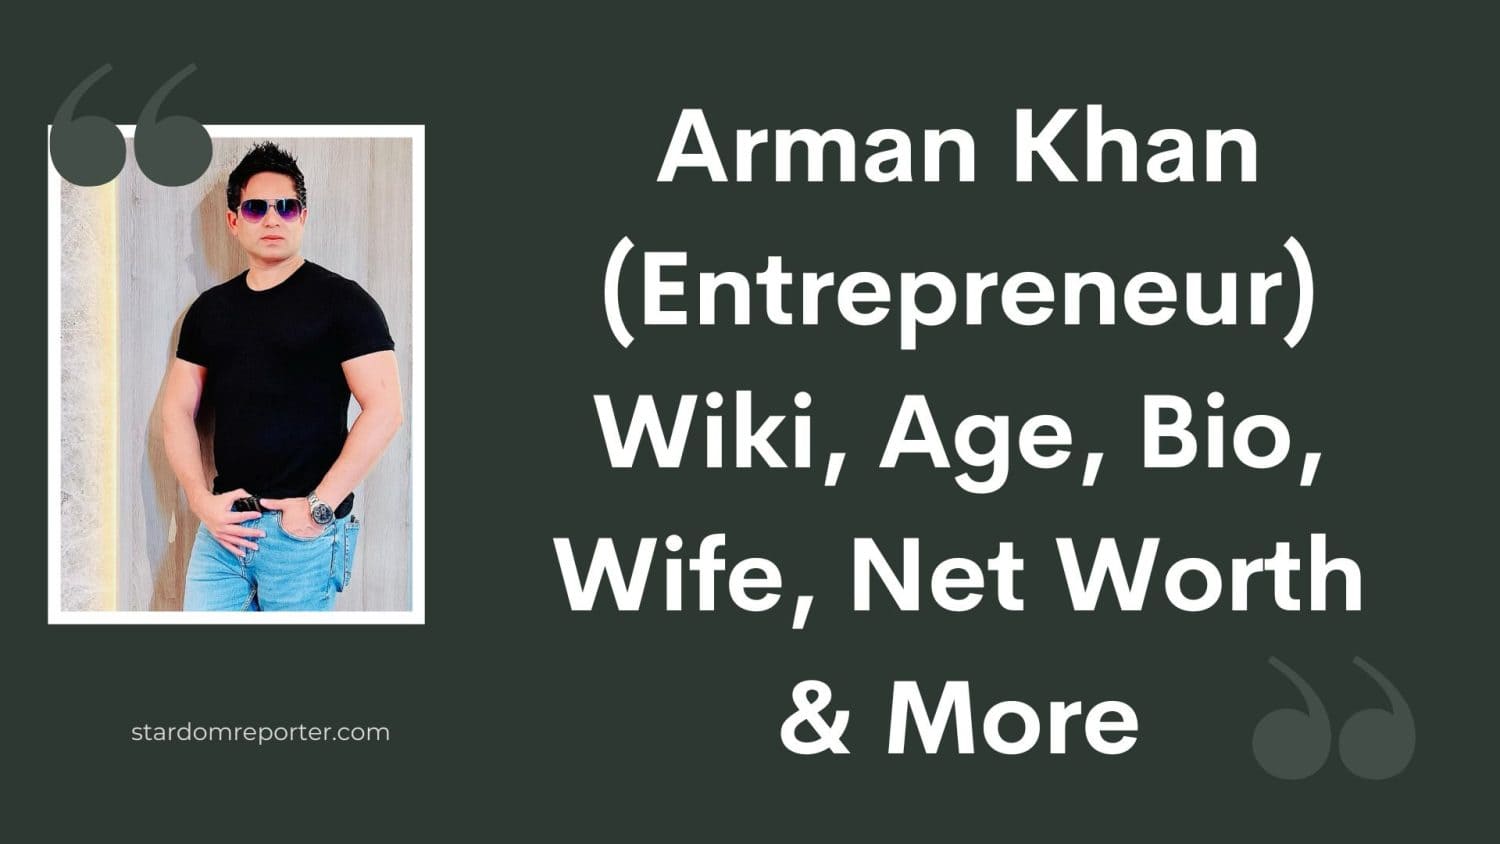 Arman Khan (Entrepreneur) Wiki, Age, Bio, Wife, Net Worth & More - 37